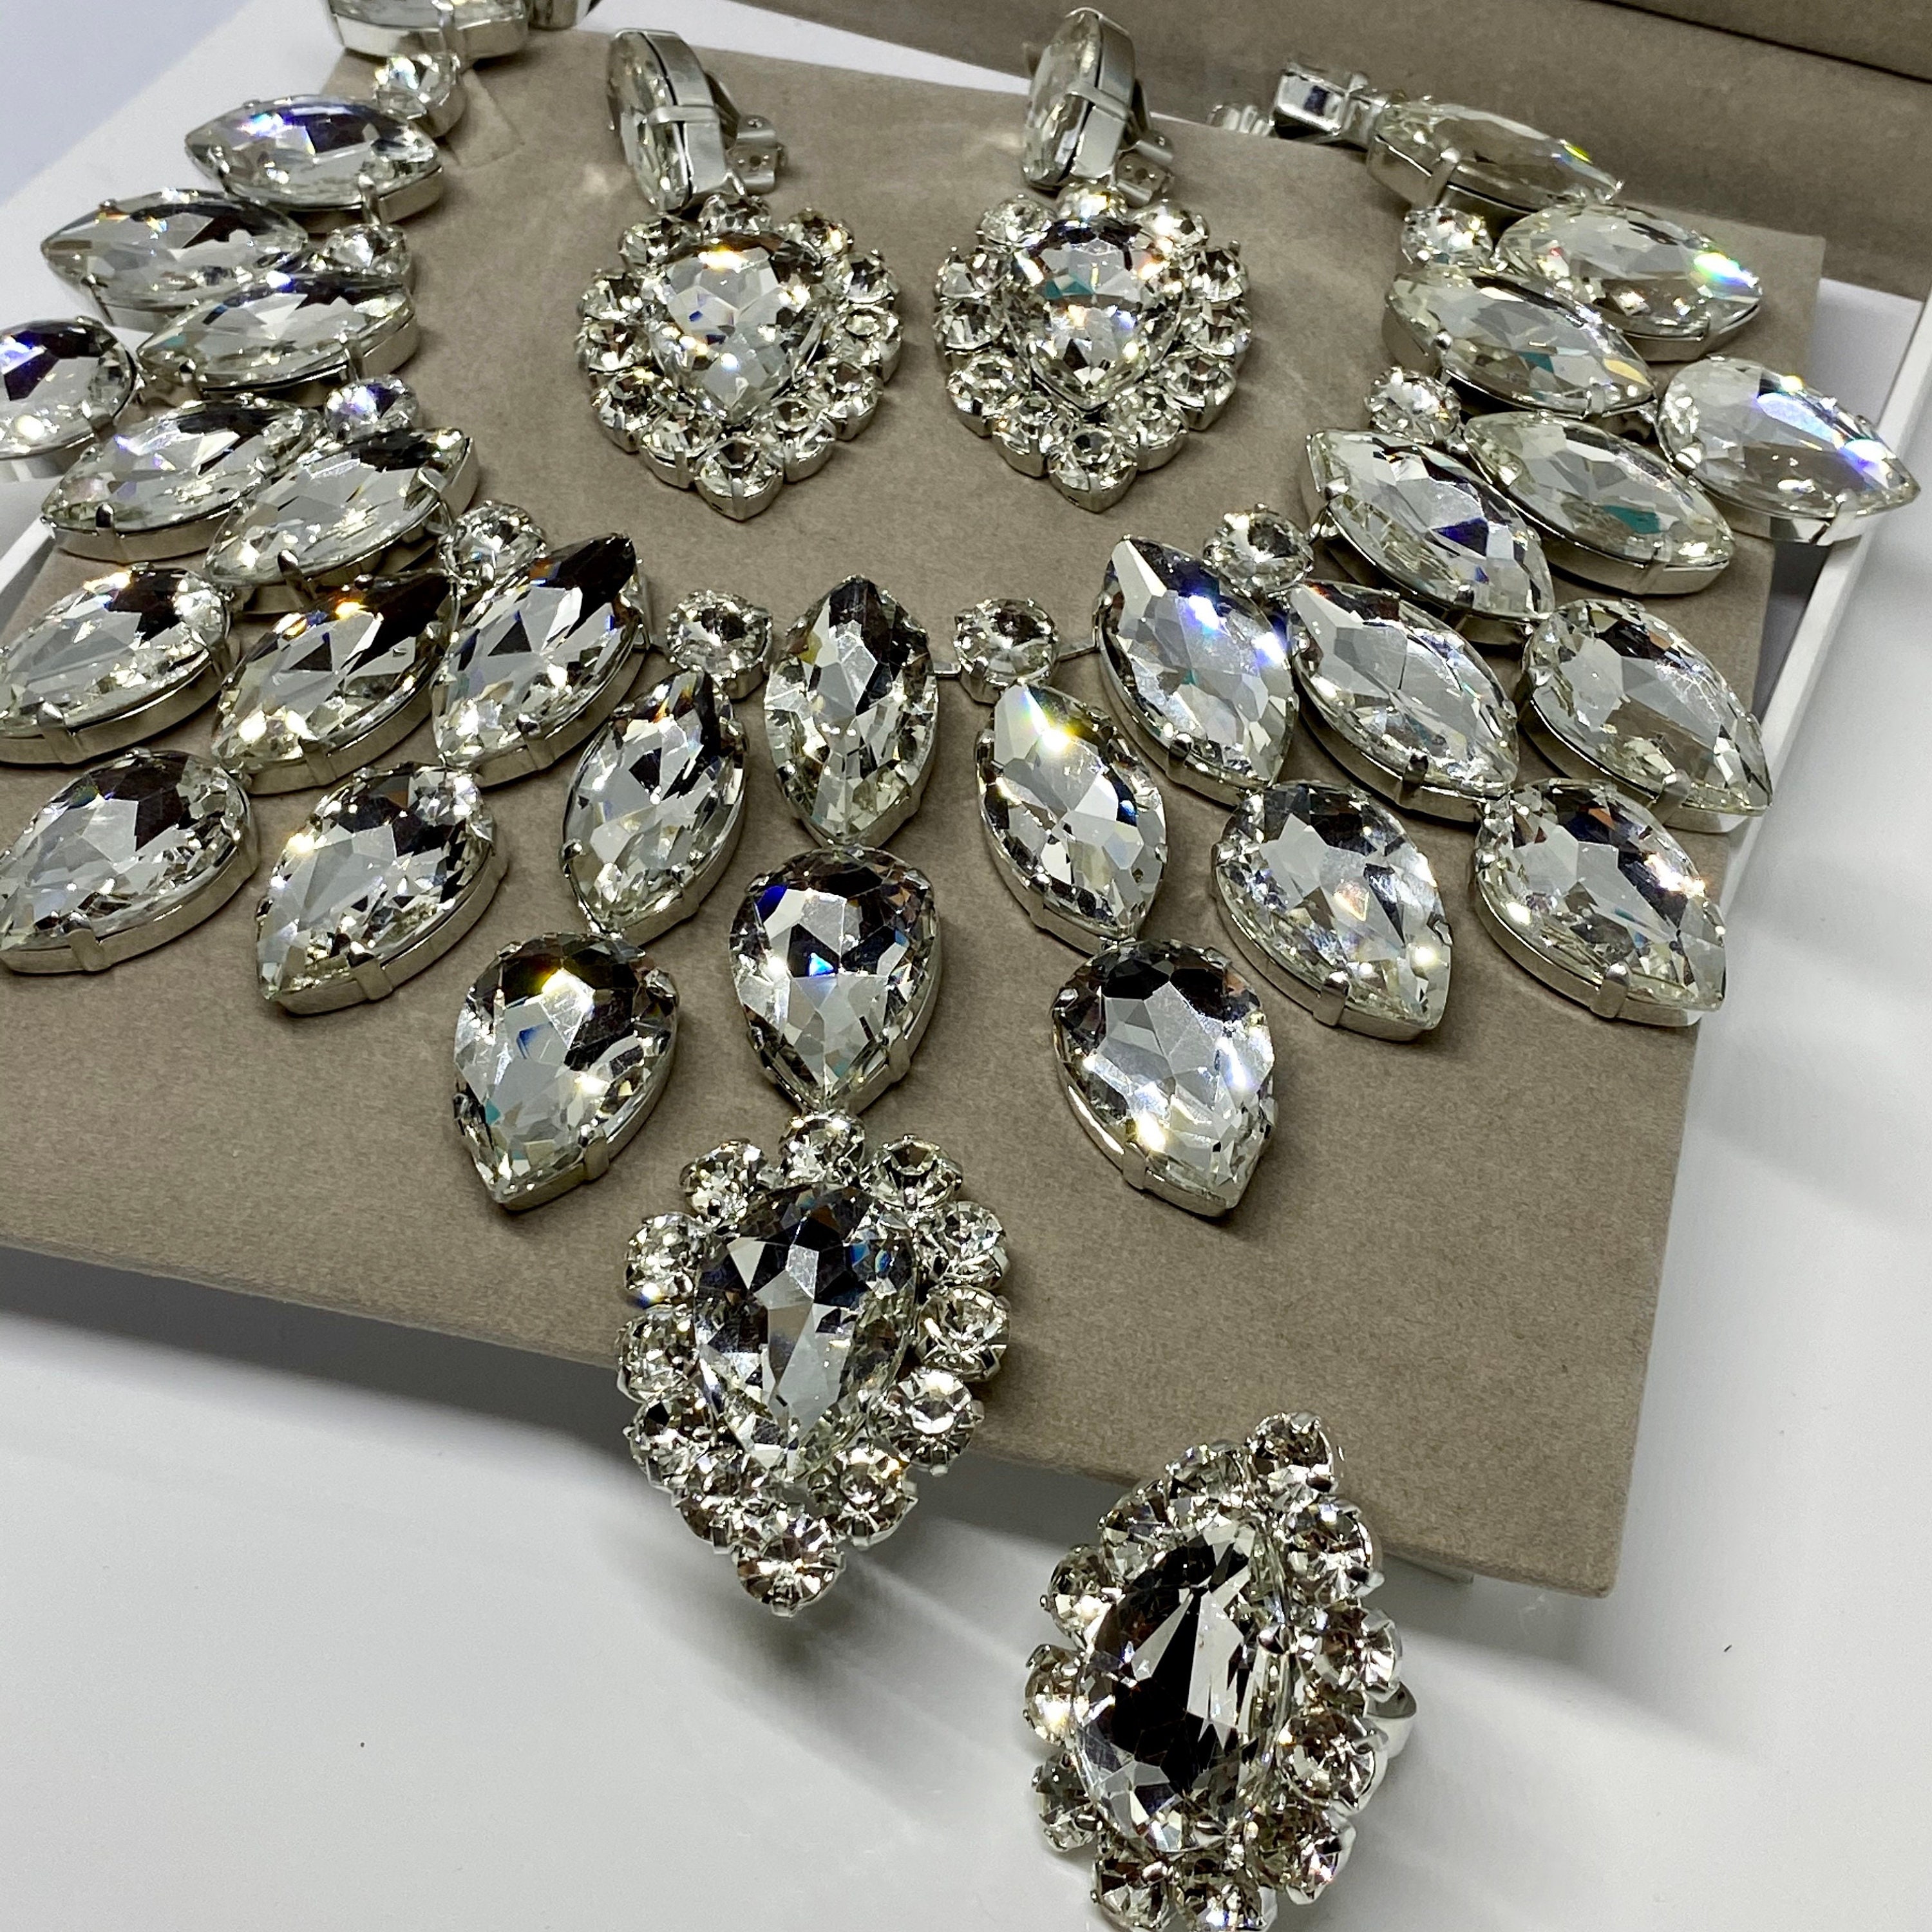 Diamante Silver with Zircon stones Ladies Jewellery Set Earrings Necklace  S887 | eBay